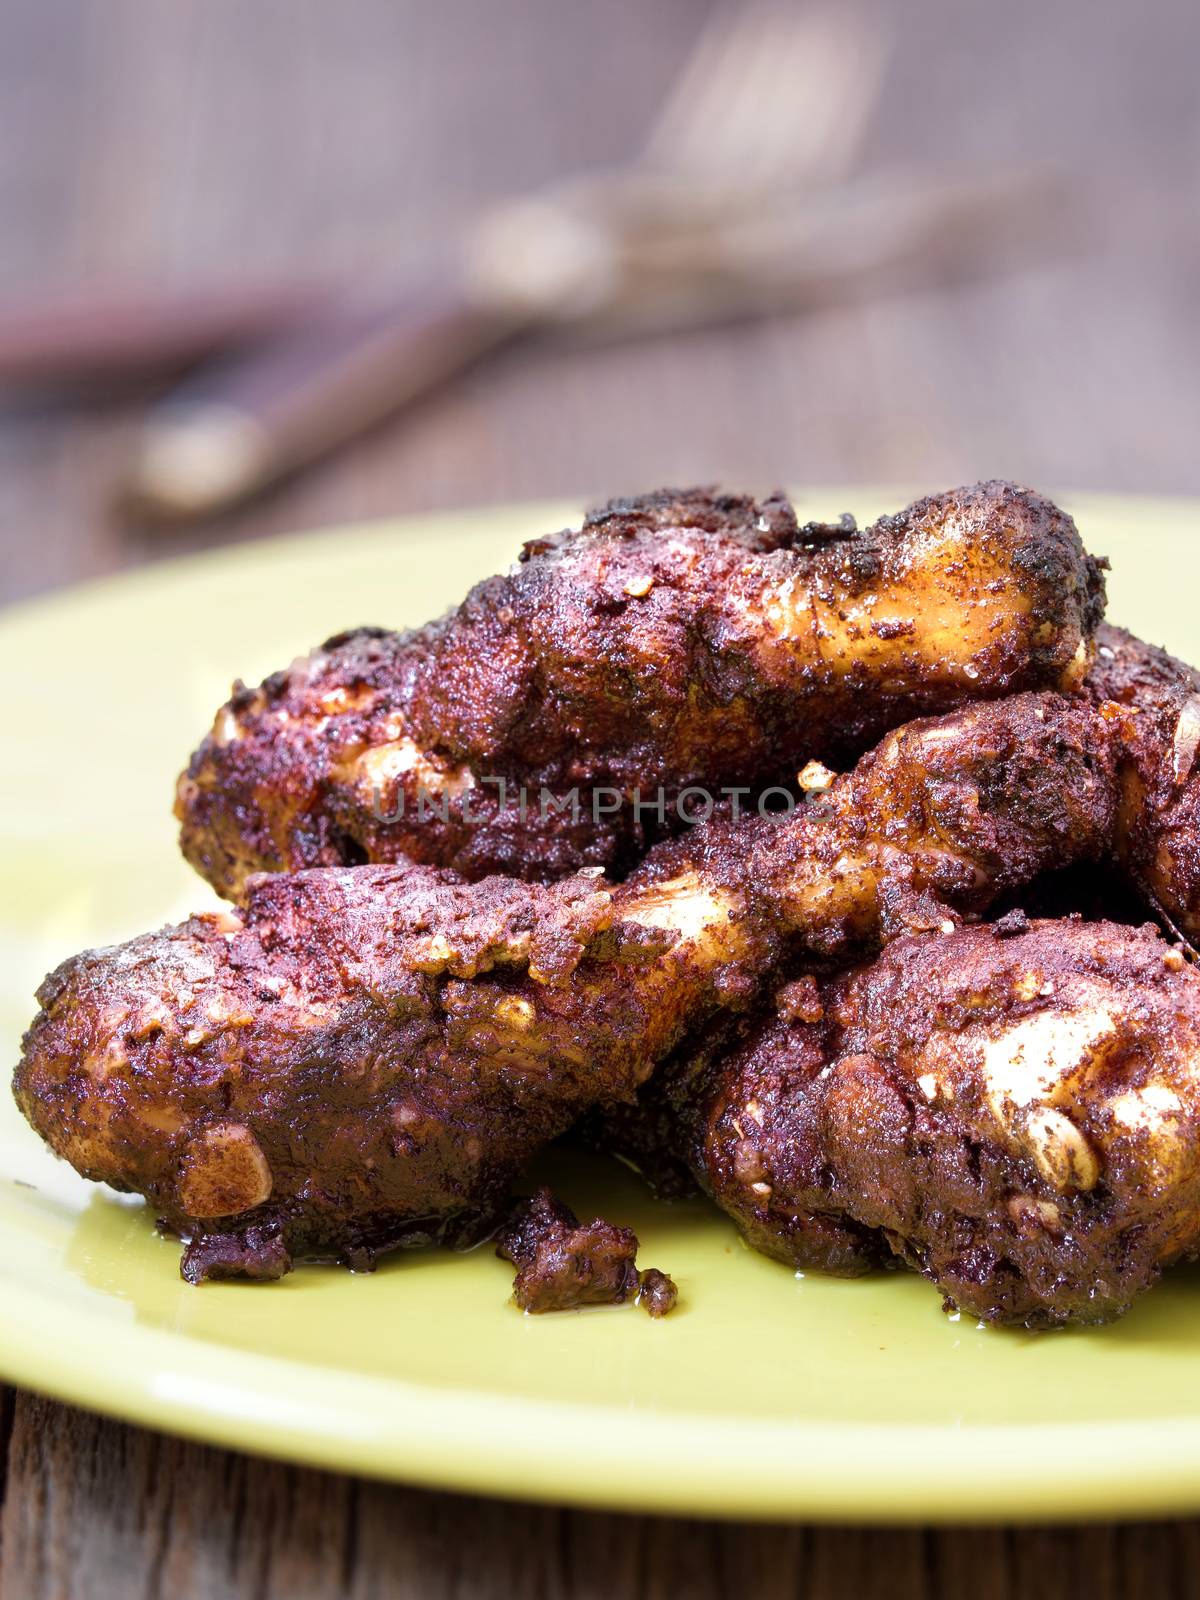 spicy jamaican jerk chicken by zkruger